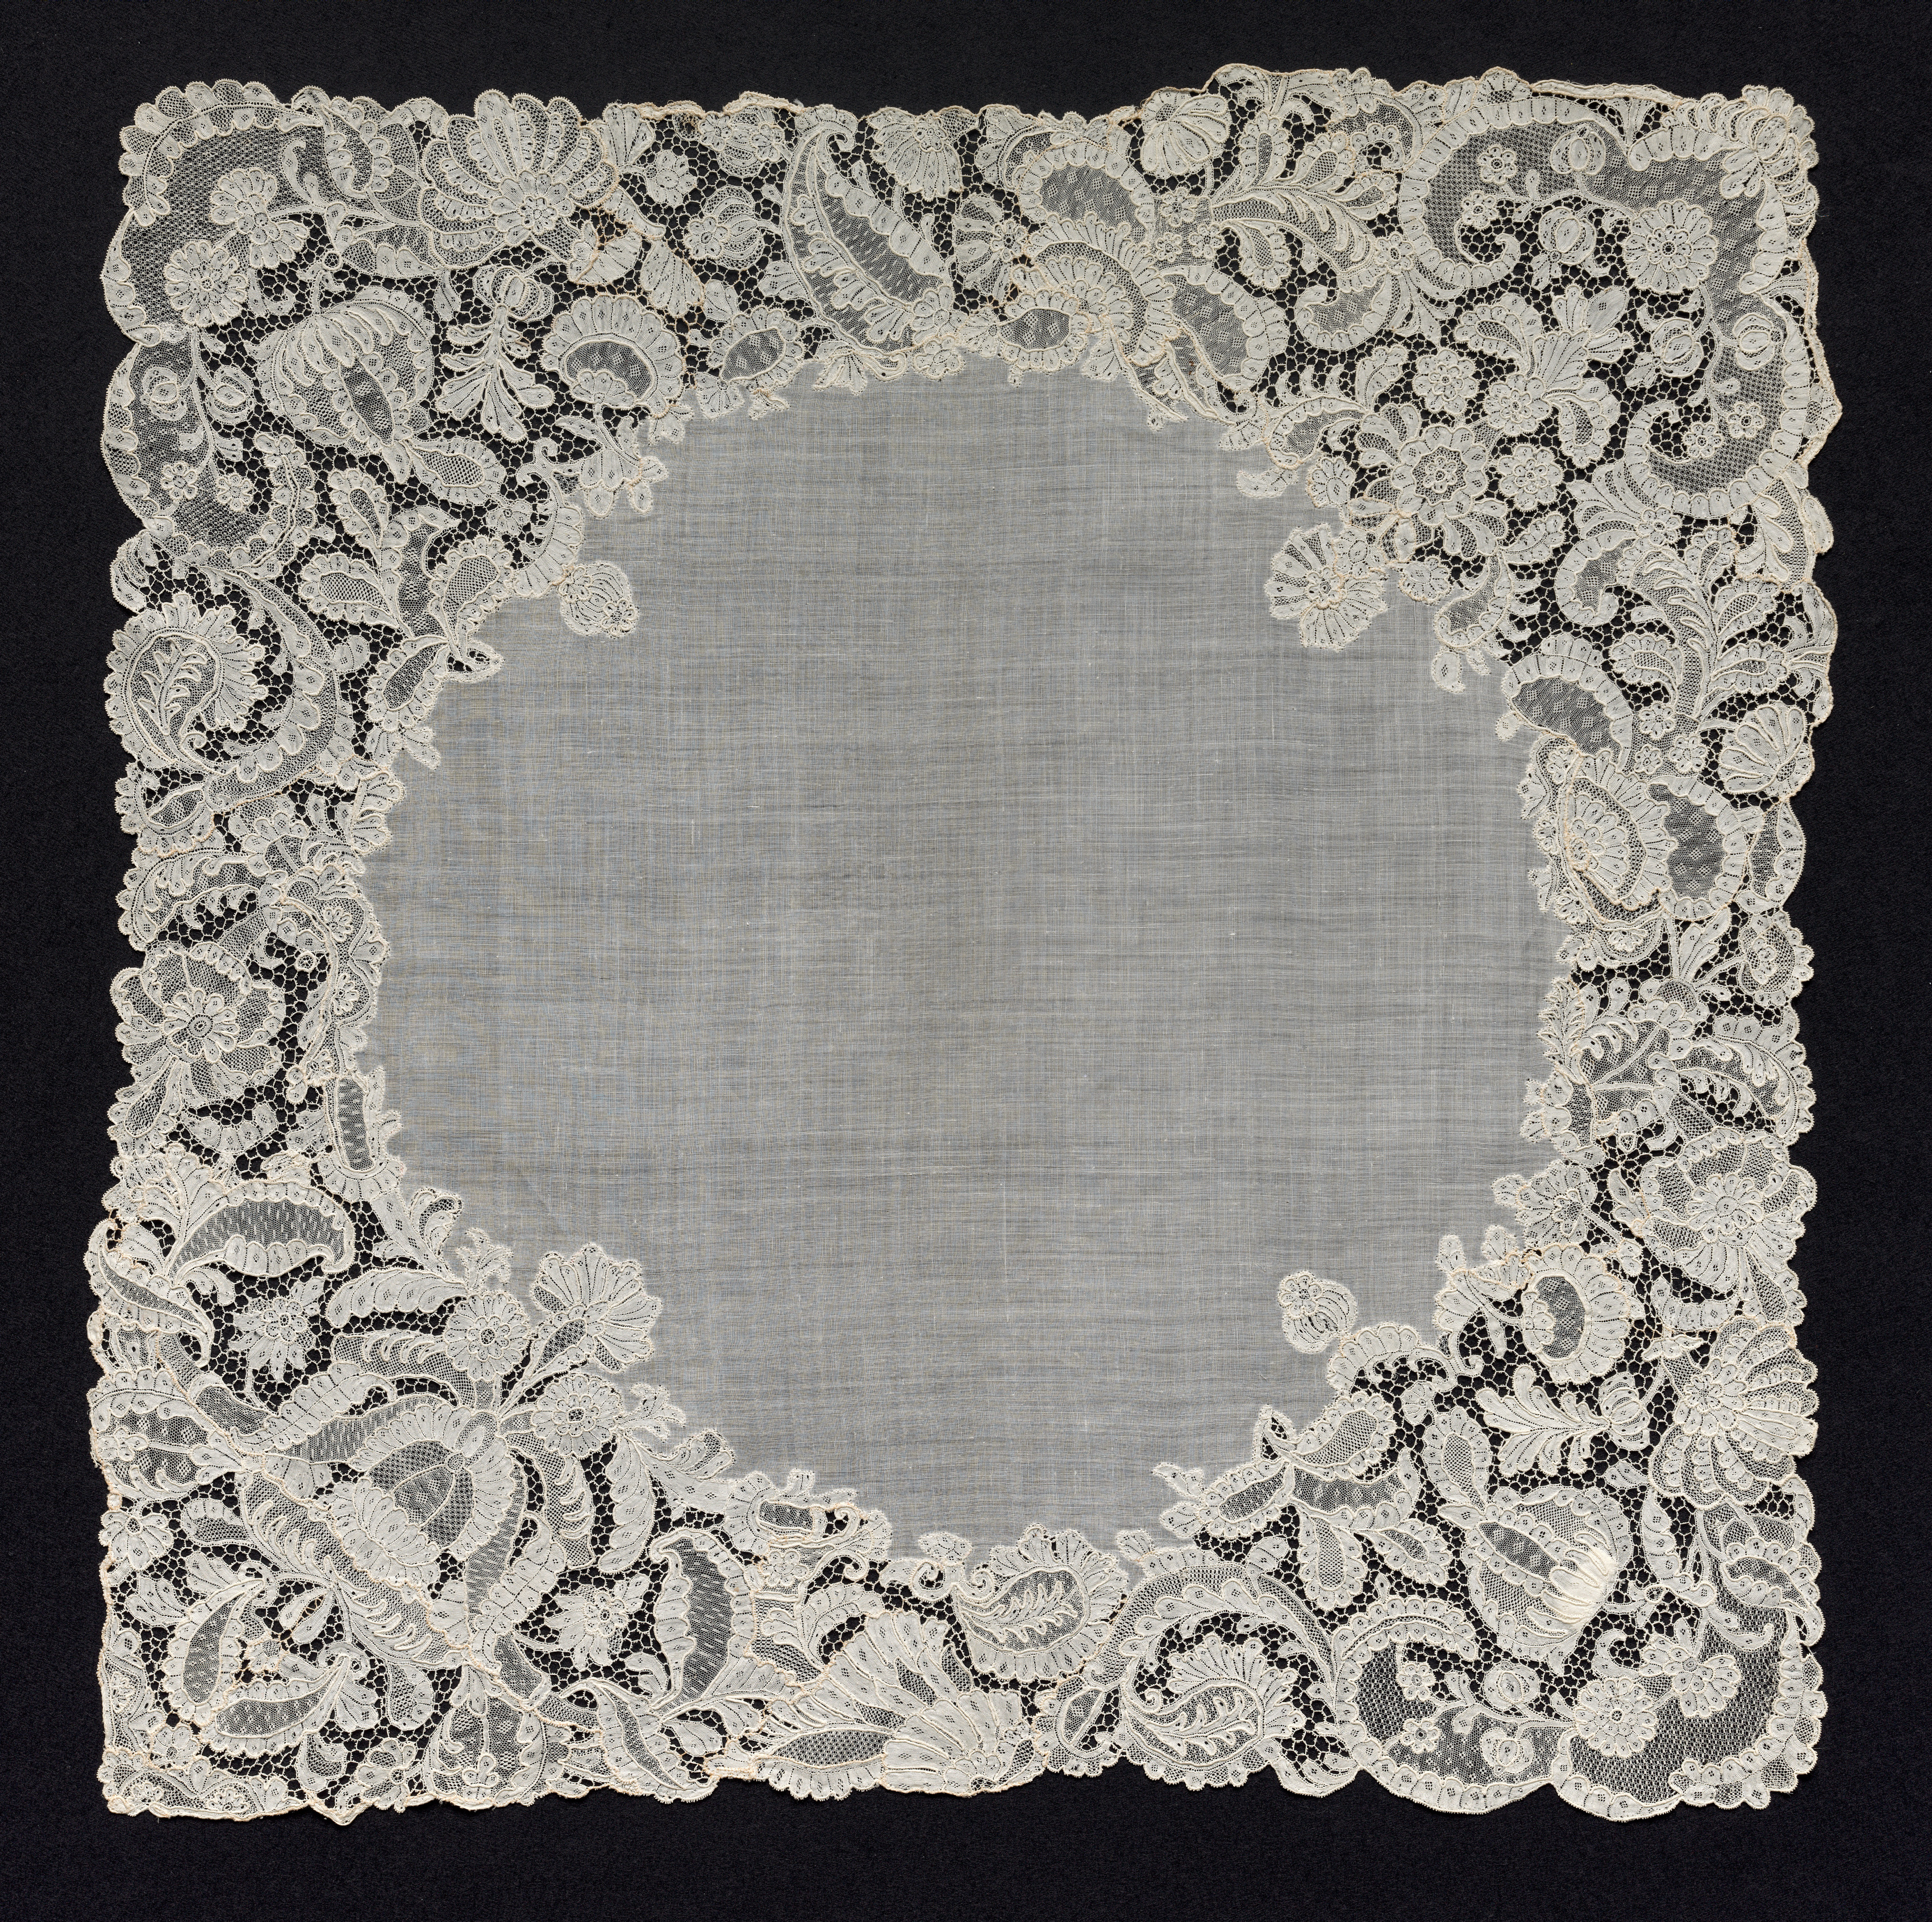 Needlepoint (Point Alençon) Lace Handkerchief